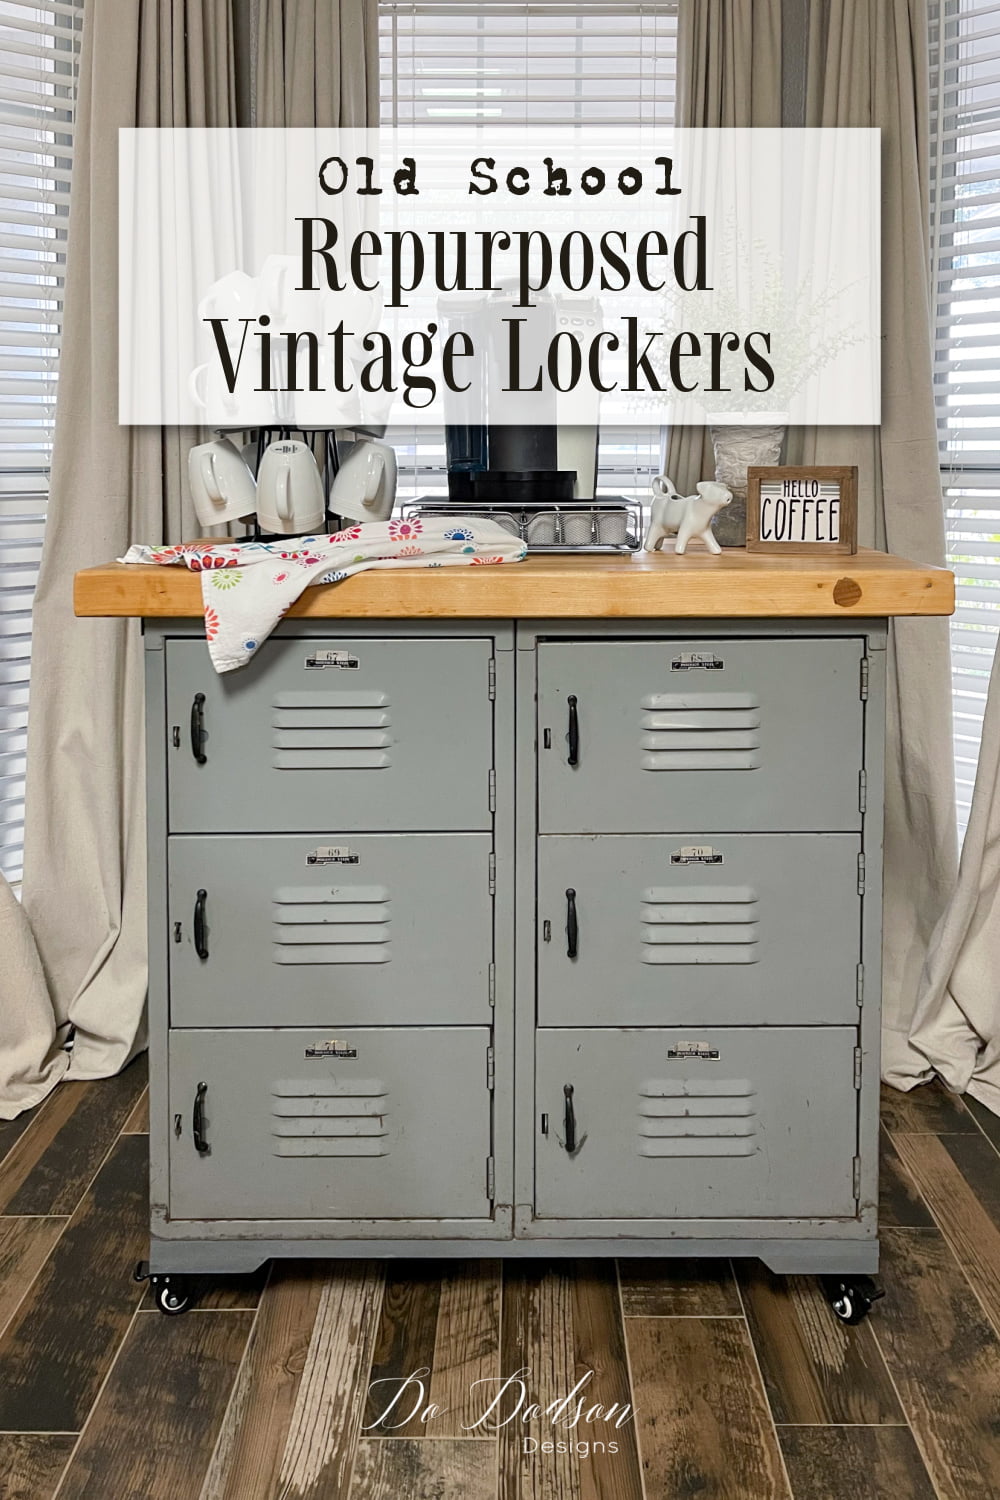 Repurposed Metal Vintage Lockers - Old School Style